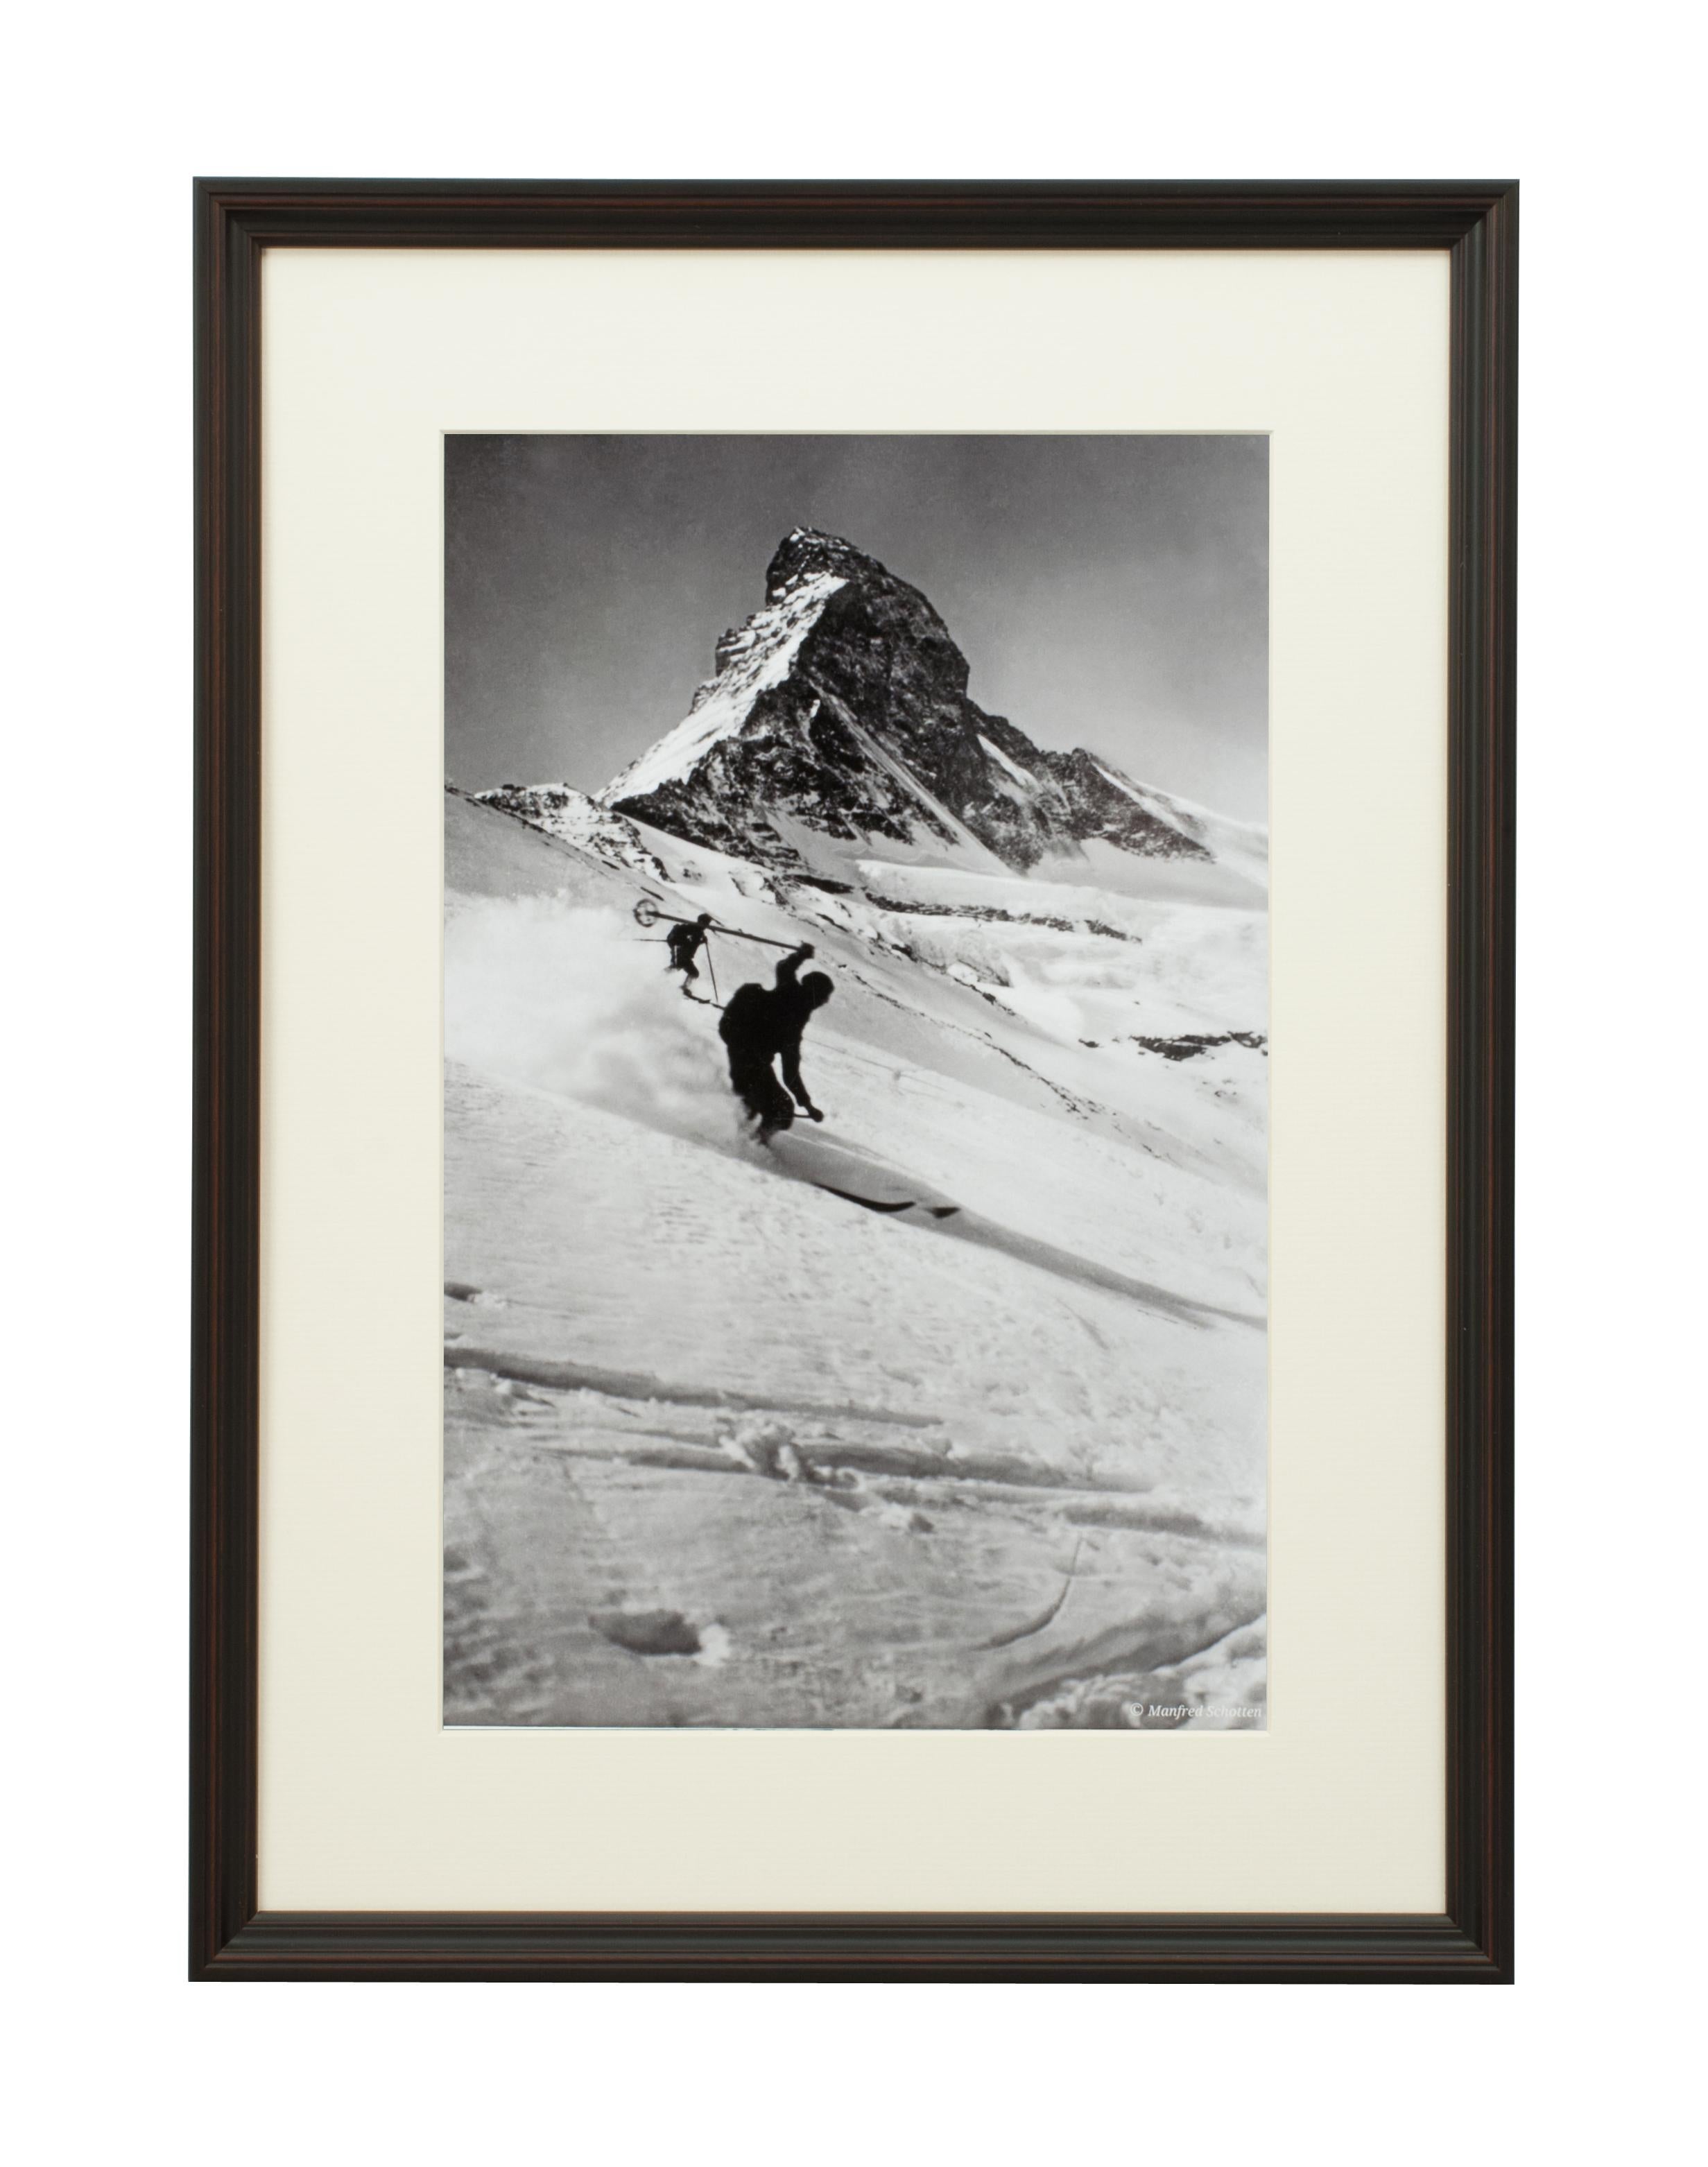 Photographie de ski de style vintage, photographie de ski alpin encadrée, Cervin et skieurs.
mATTERHORN & SKIERS', une photographie moderne encadrée et montée en noir et blanc d'après une photographie originale de ski des années 1930. Le cadre est